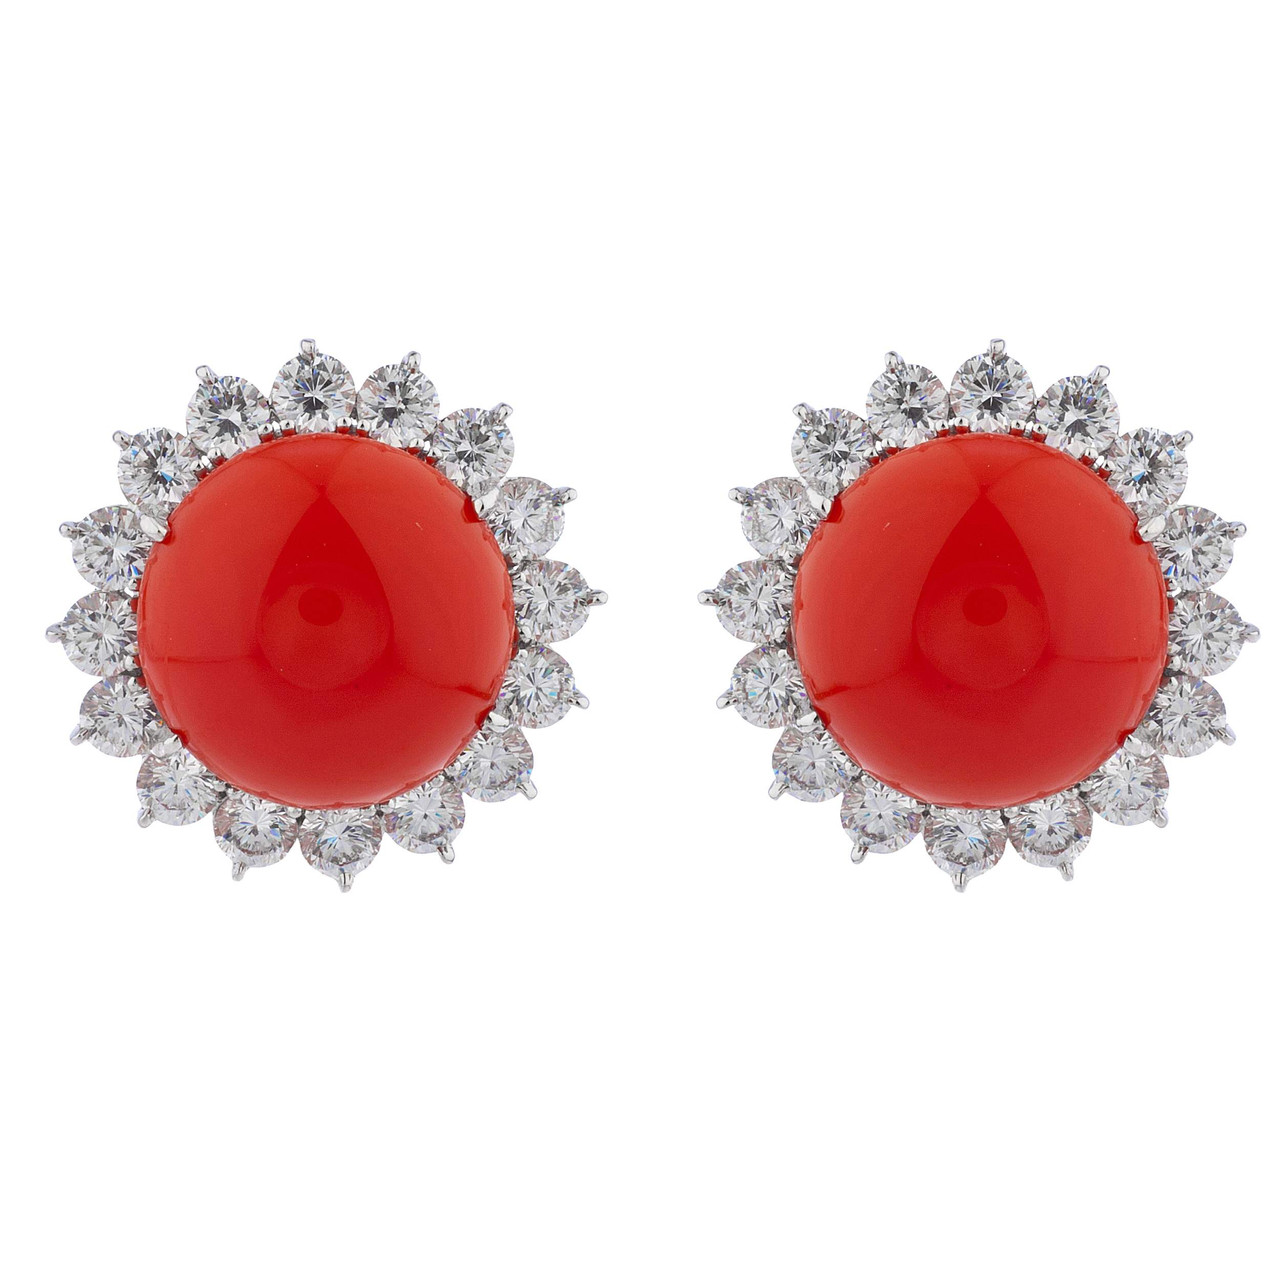 Buy Fancy Stone Earrings Tiny/Small Earrings -12 mm Girls and Women Earrings  (Red) at Amazon.in